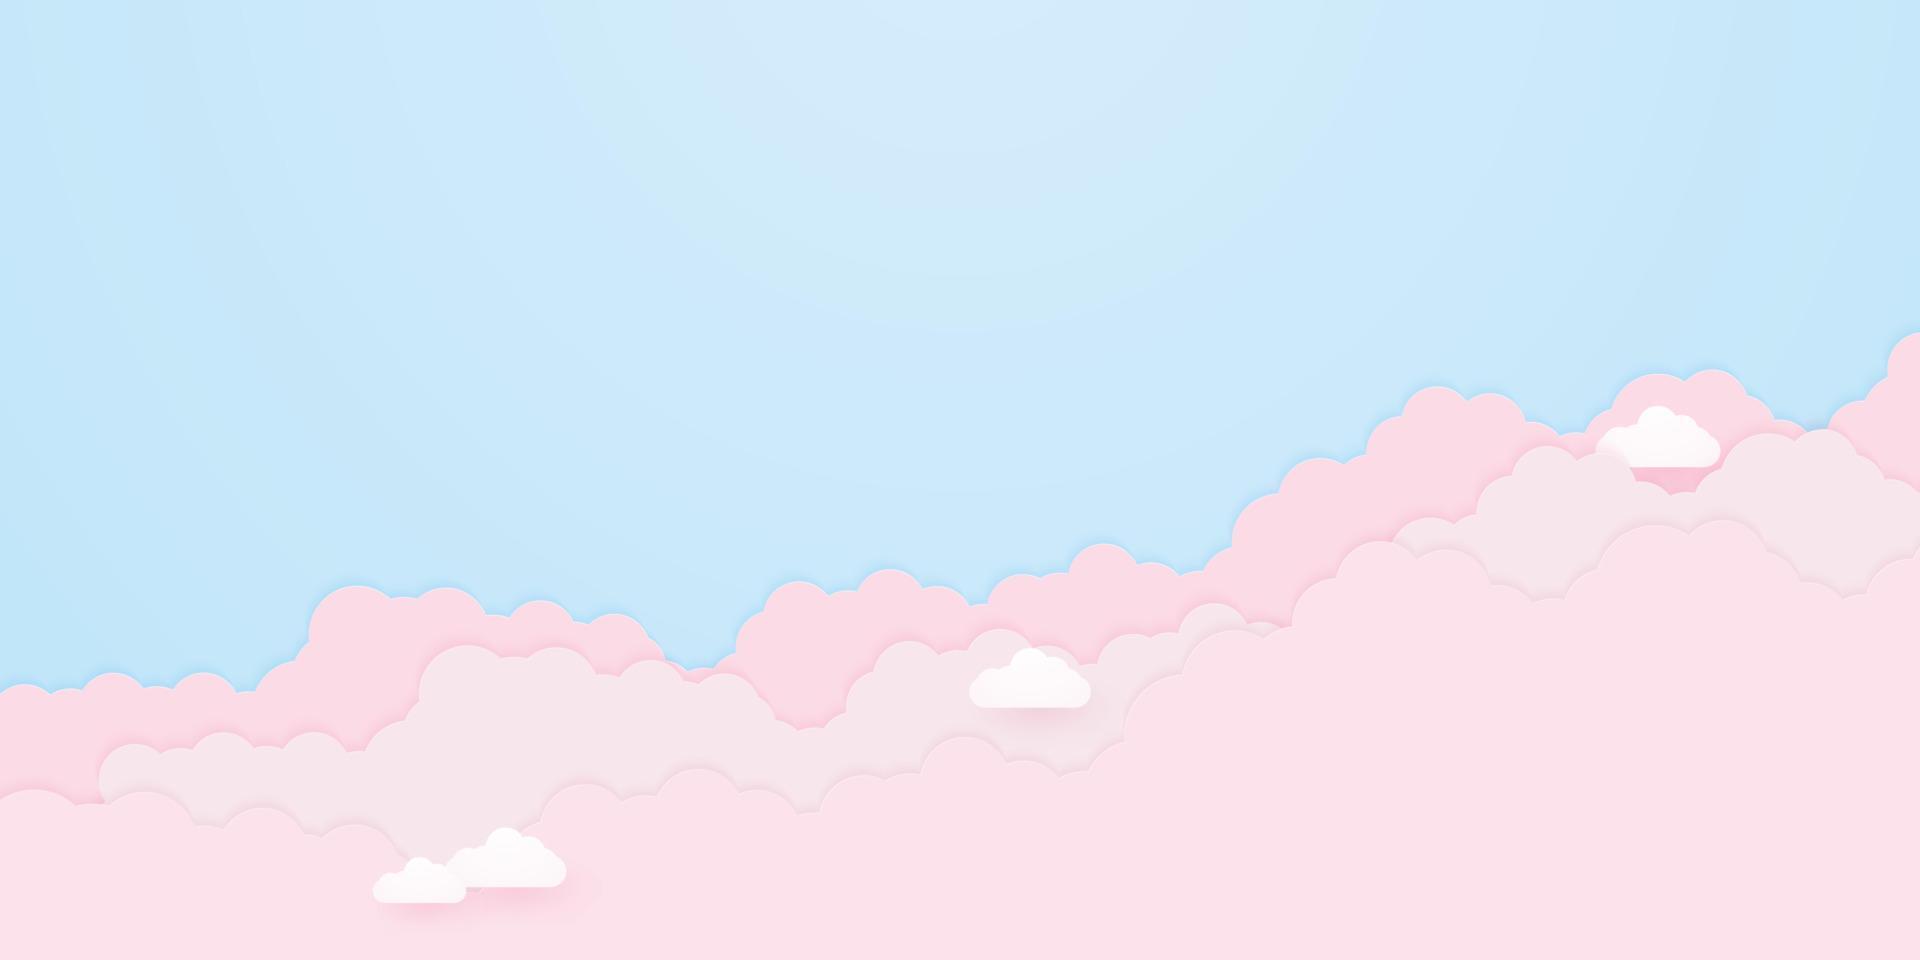 cloudscape, ciel bleu avec des nuages roses, style art papier vecteur